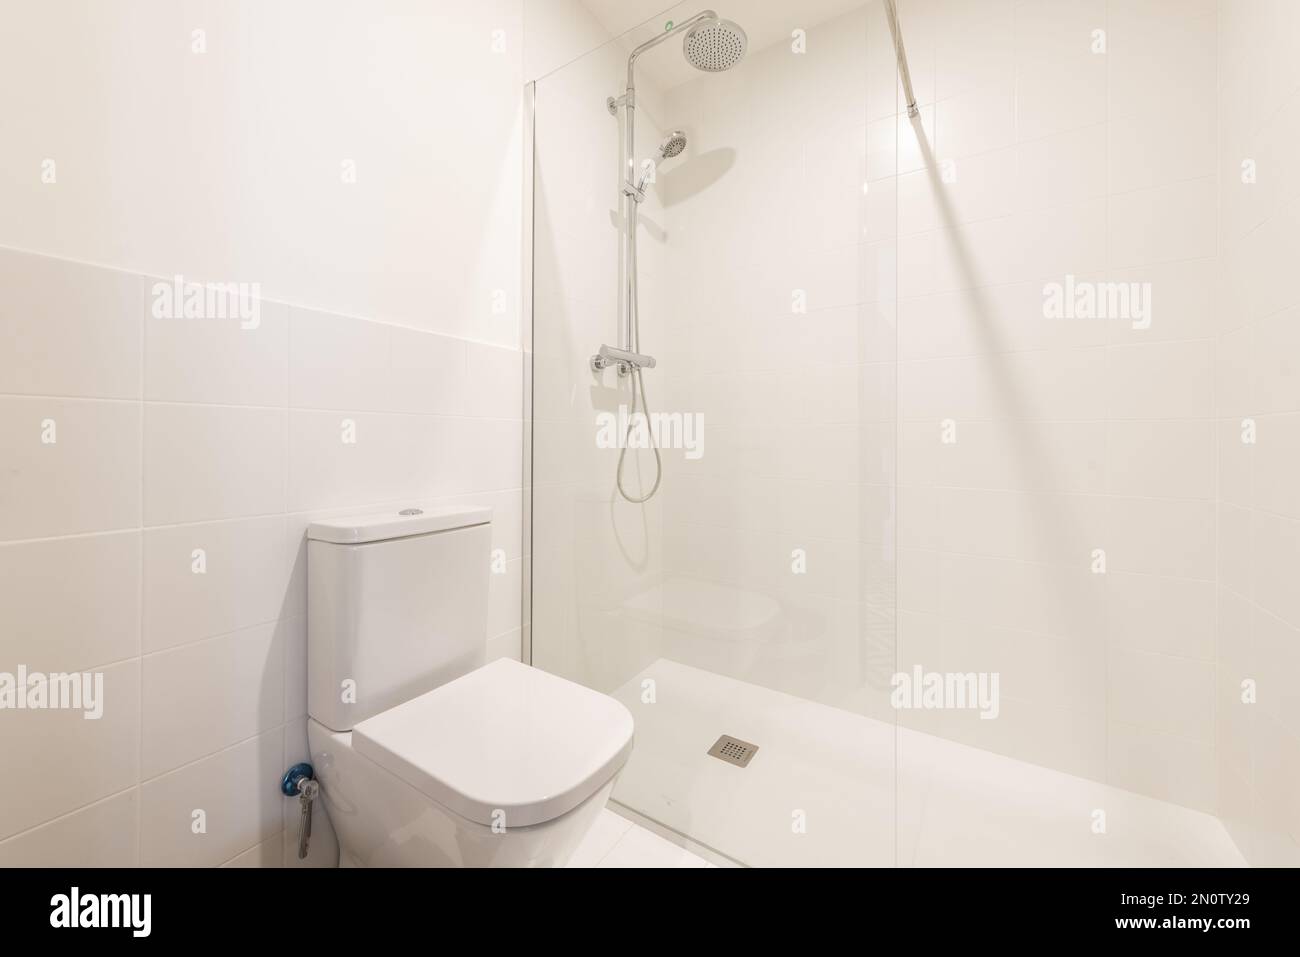 Un bagno semplice con una toilette in porcellana e una cabina doccia in vetro con rubinetti cromati e soffione doccia Foto Stock